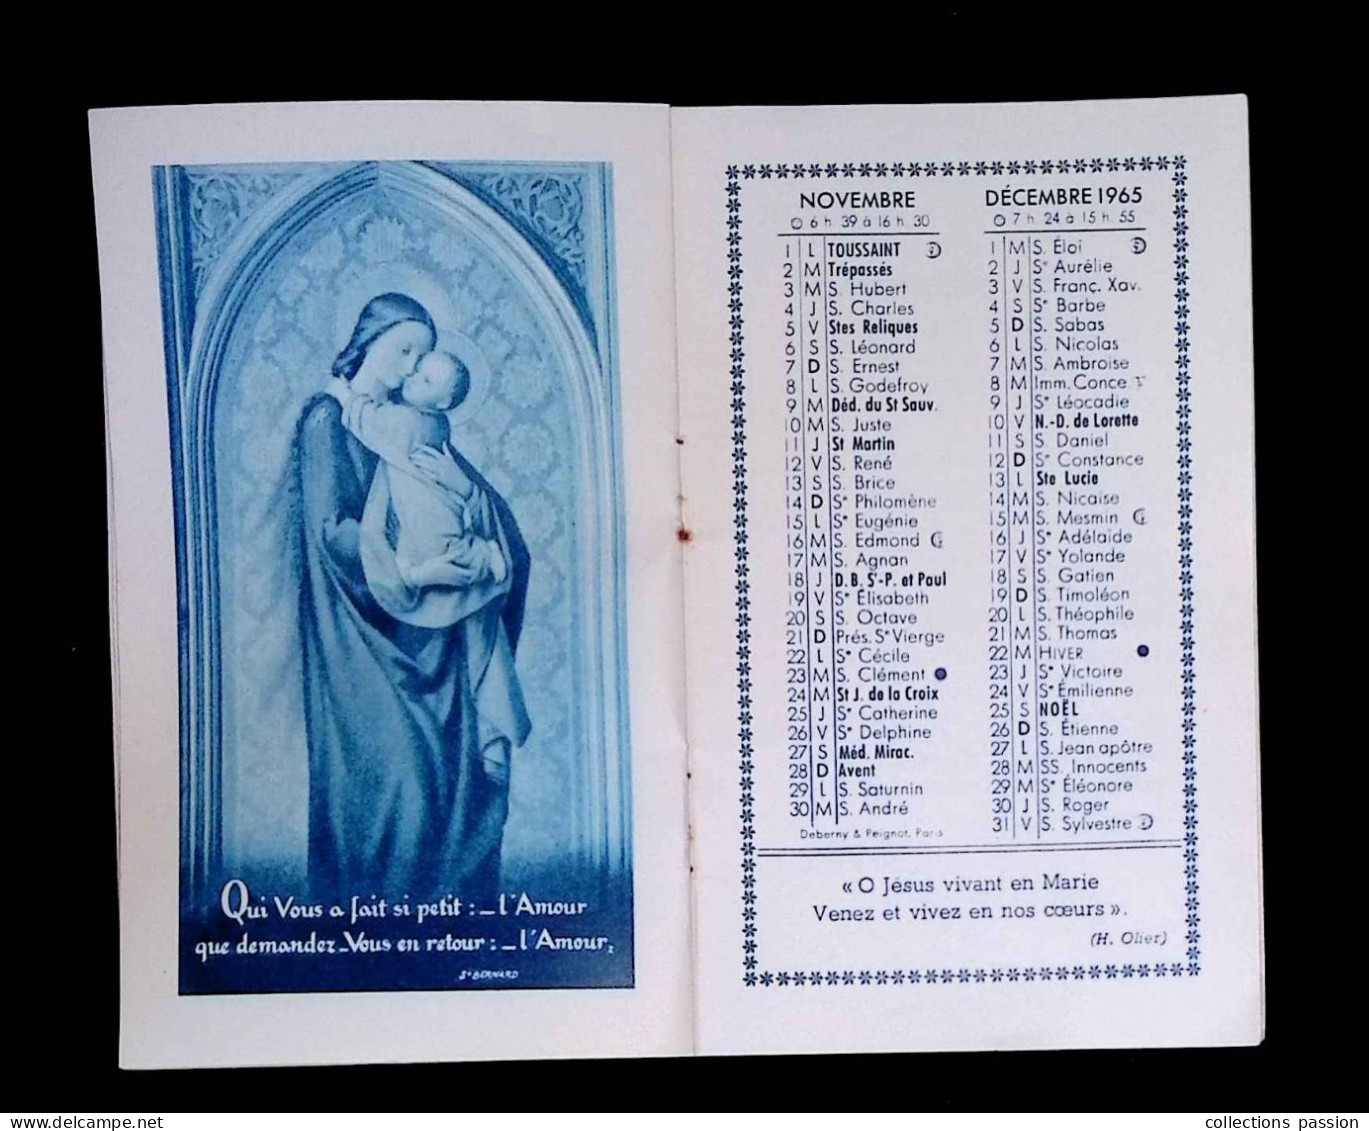 Calendrier Bernadette 1954, Carnet, Maison Mère Des Soeurs De La Charité, 58, Nevers, 16 Pages, 4 Scans, Frais Fr 2.25 E - Petit Format : 1941-60